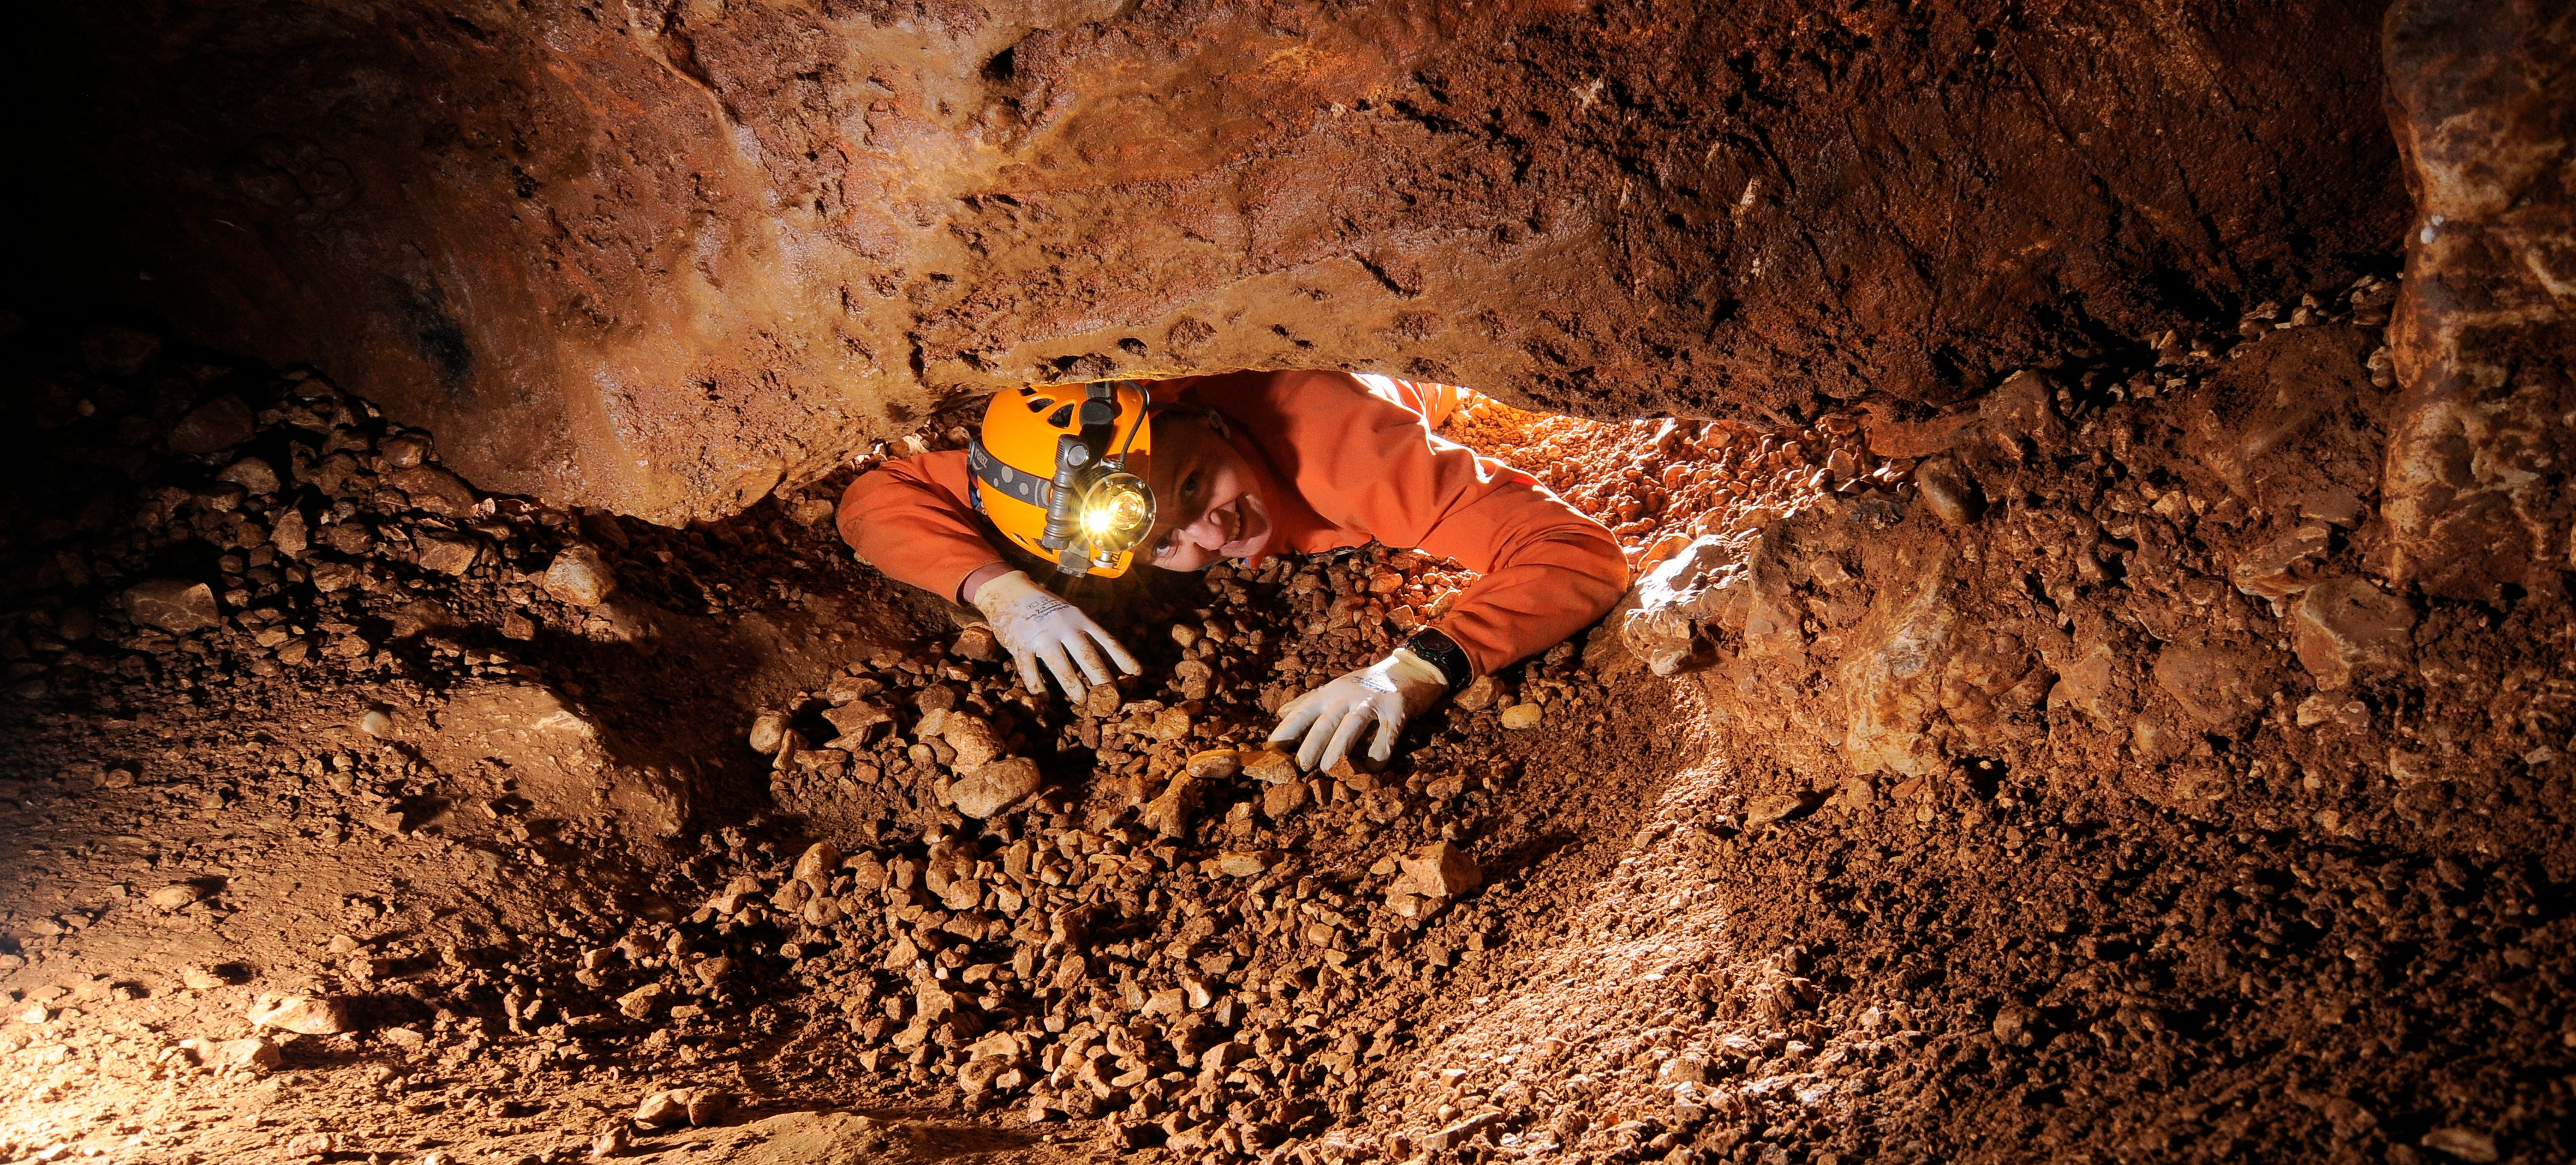 Some Random Person Stuck In A Cave? | Gizmodo Australia